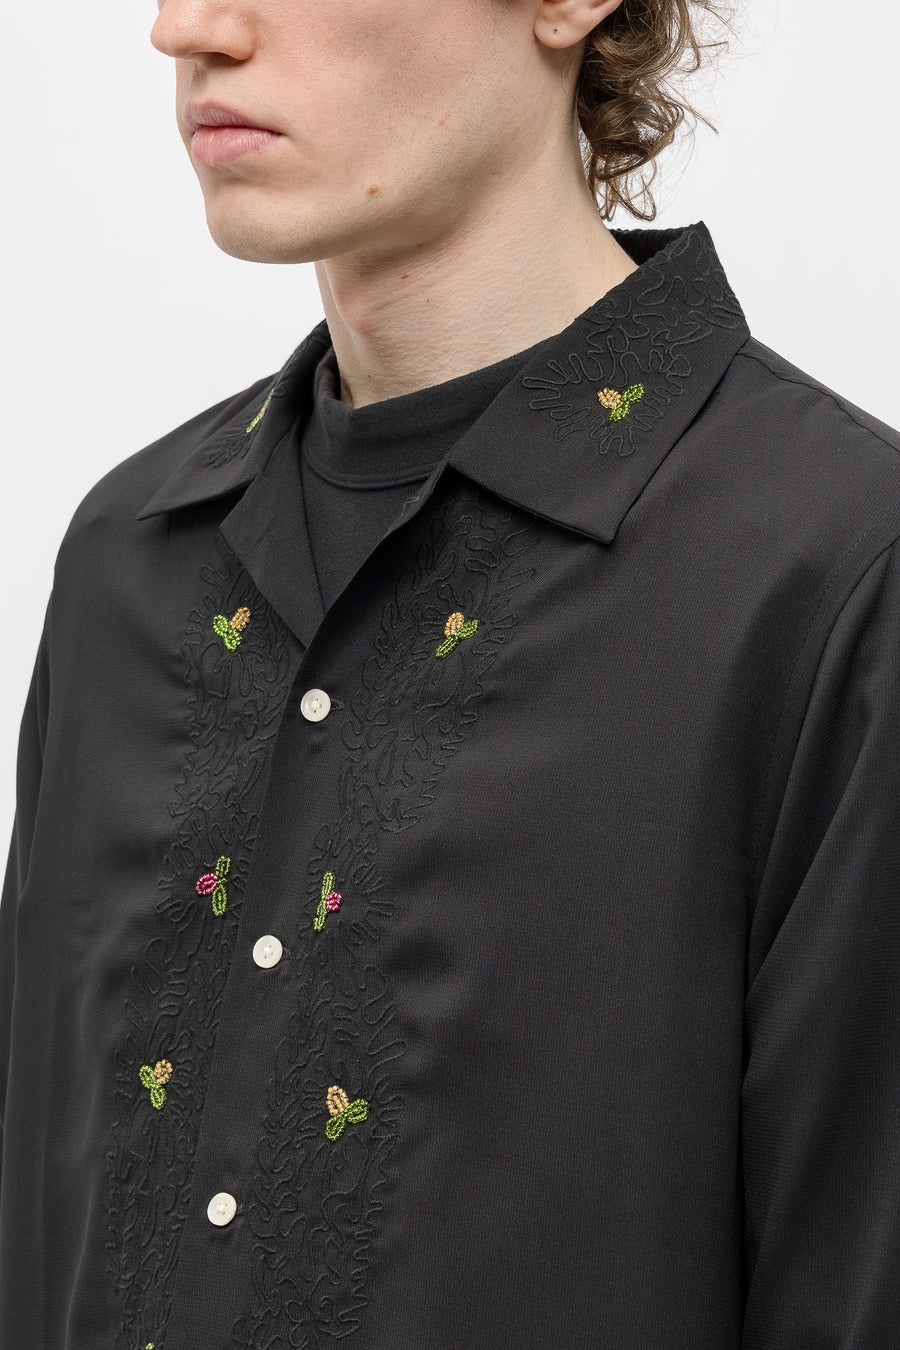 Beaded Framboise LS Shirt in Black/Multicolor - 4